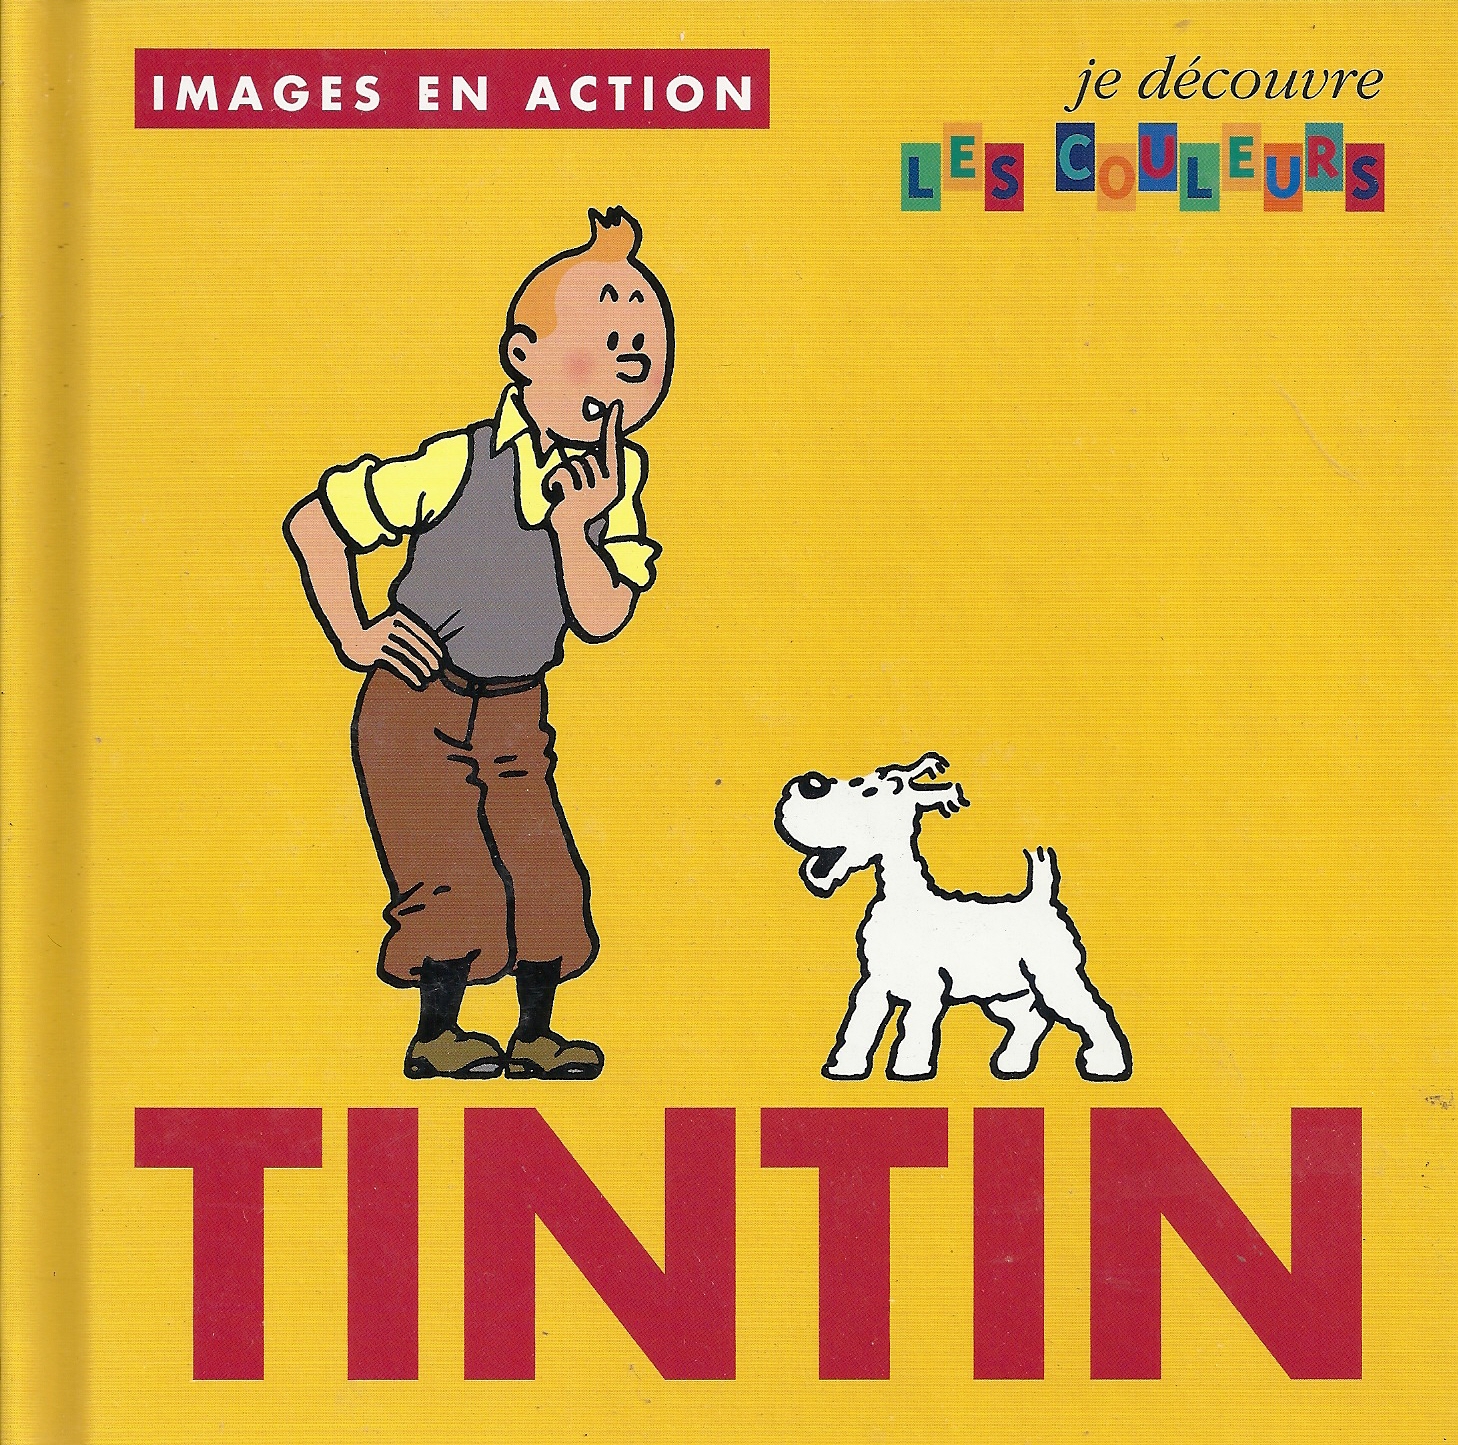 Tintin Hergé images en actions je découvre les couleurs livre enfants